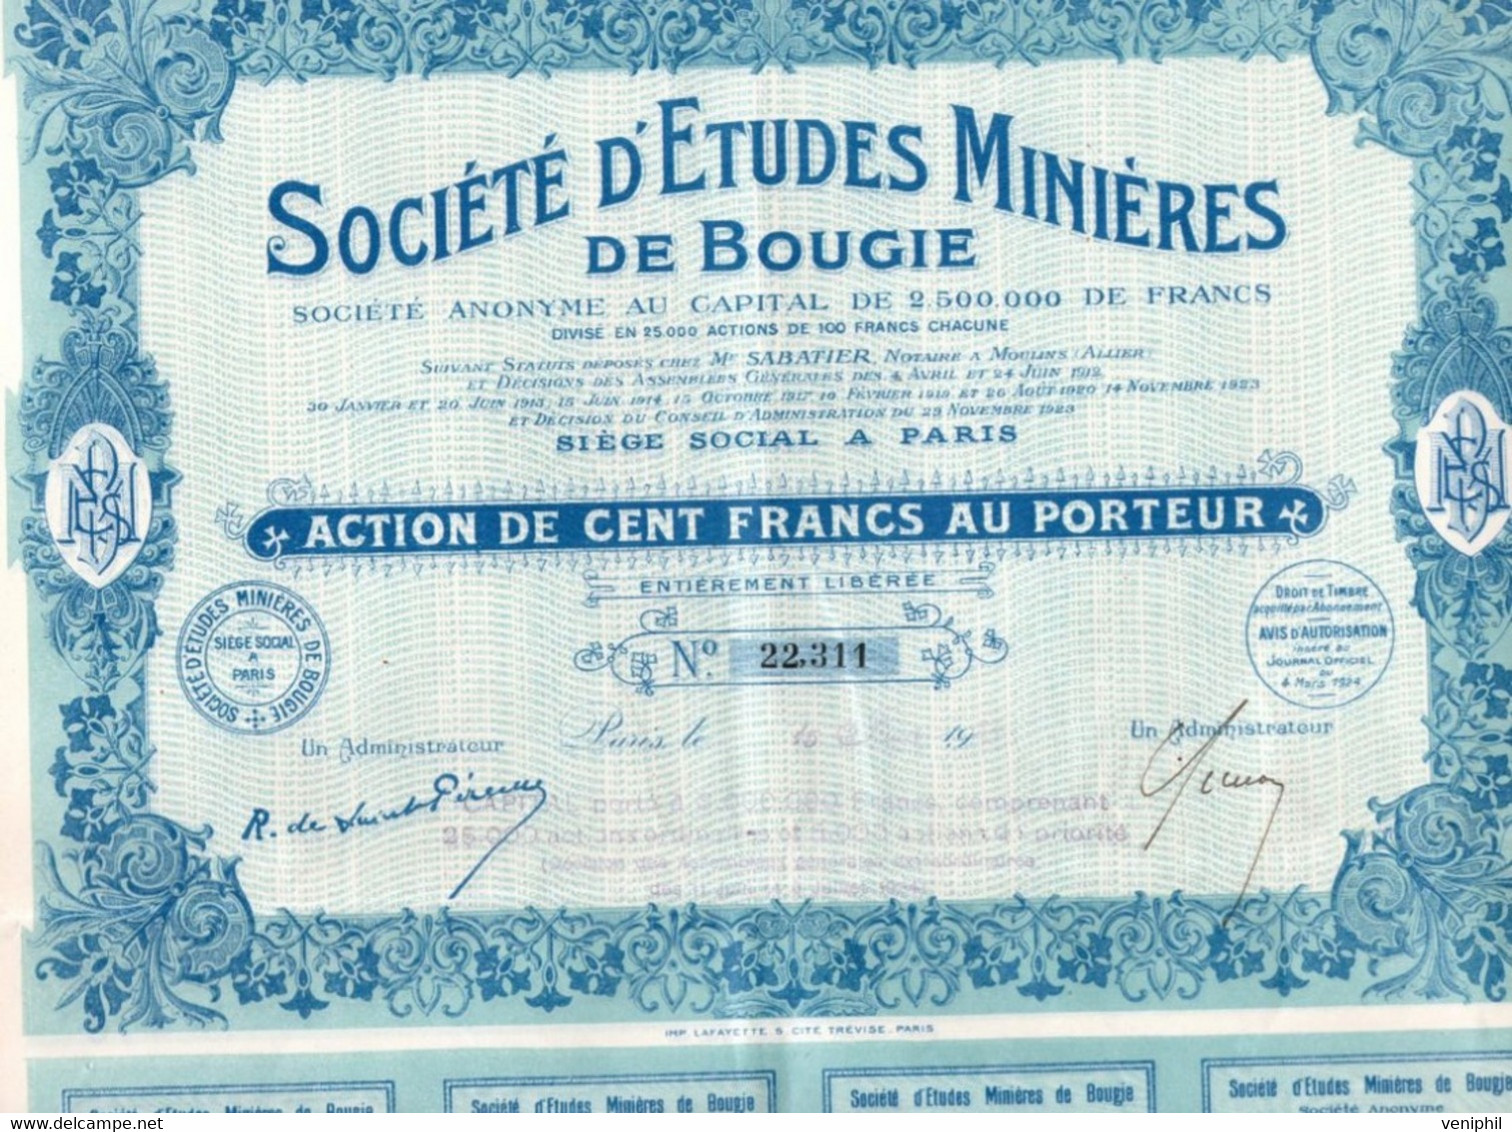 SOCIETE D'ETUDES MINIERES DE BOUGIE - ACTION DE CENT FRANCS -ANNEE 1924 - Mineral